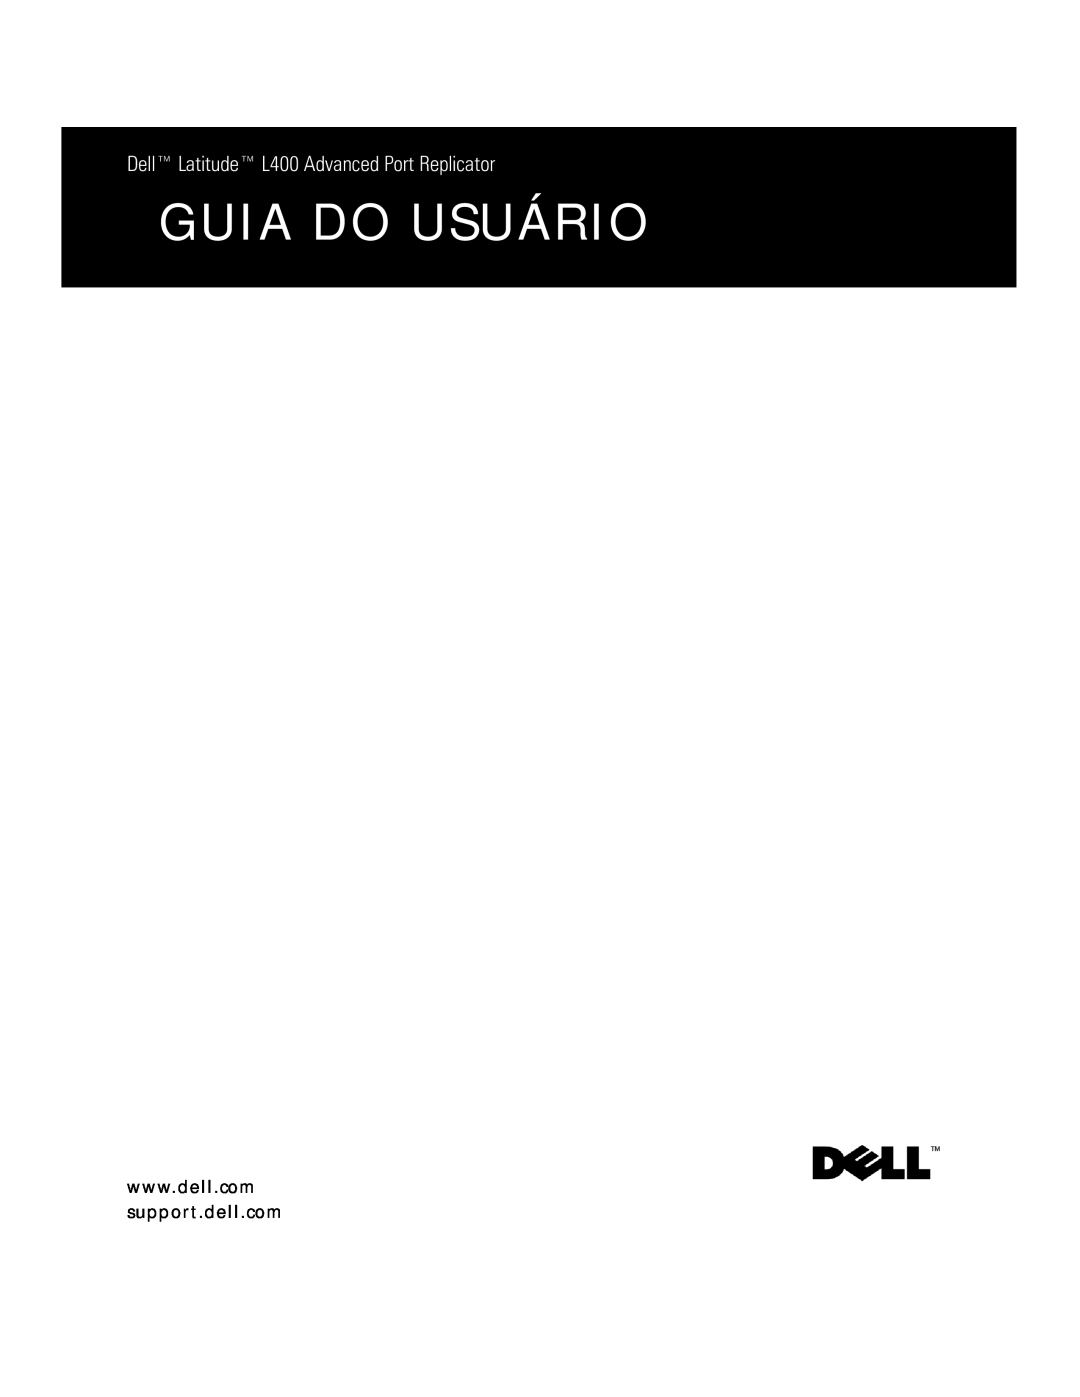 Dell L400 manual Guia Do Usuário, HOOŒ/DWLWXGHŒ/$GYDQFHG3RUW5HSOLFDWRU 